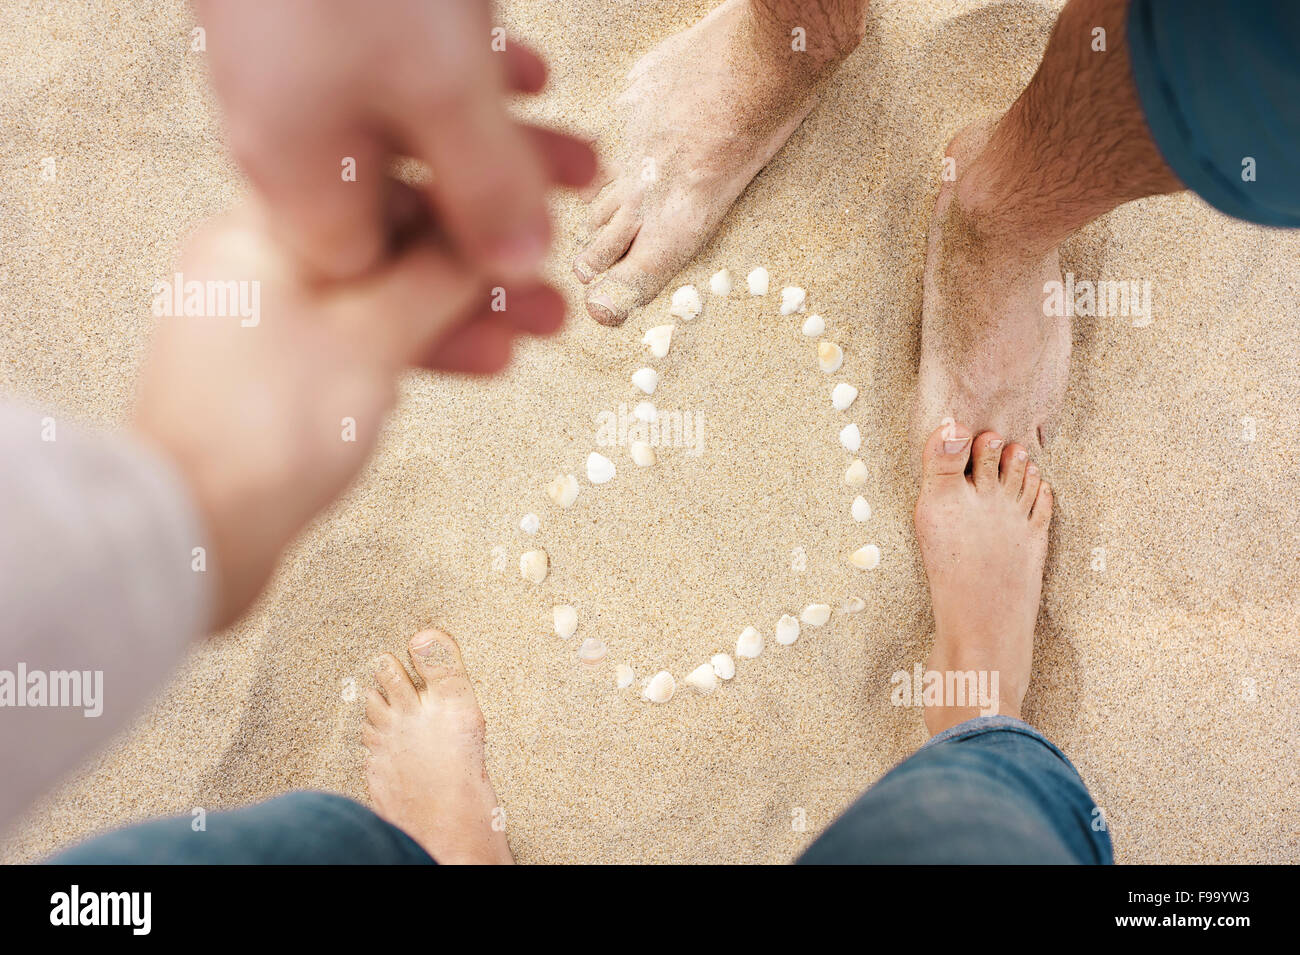 Weibliche und männliche Füße Nahaufnahme von Frau und Mann Hand in Hand und stehen neben der Schale Herz am Sandstrand Stockfoto